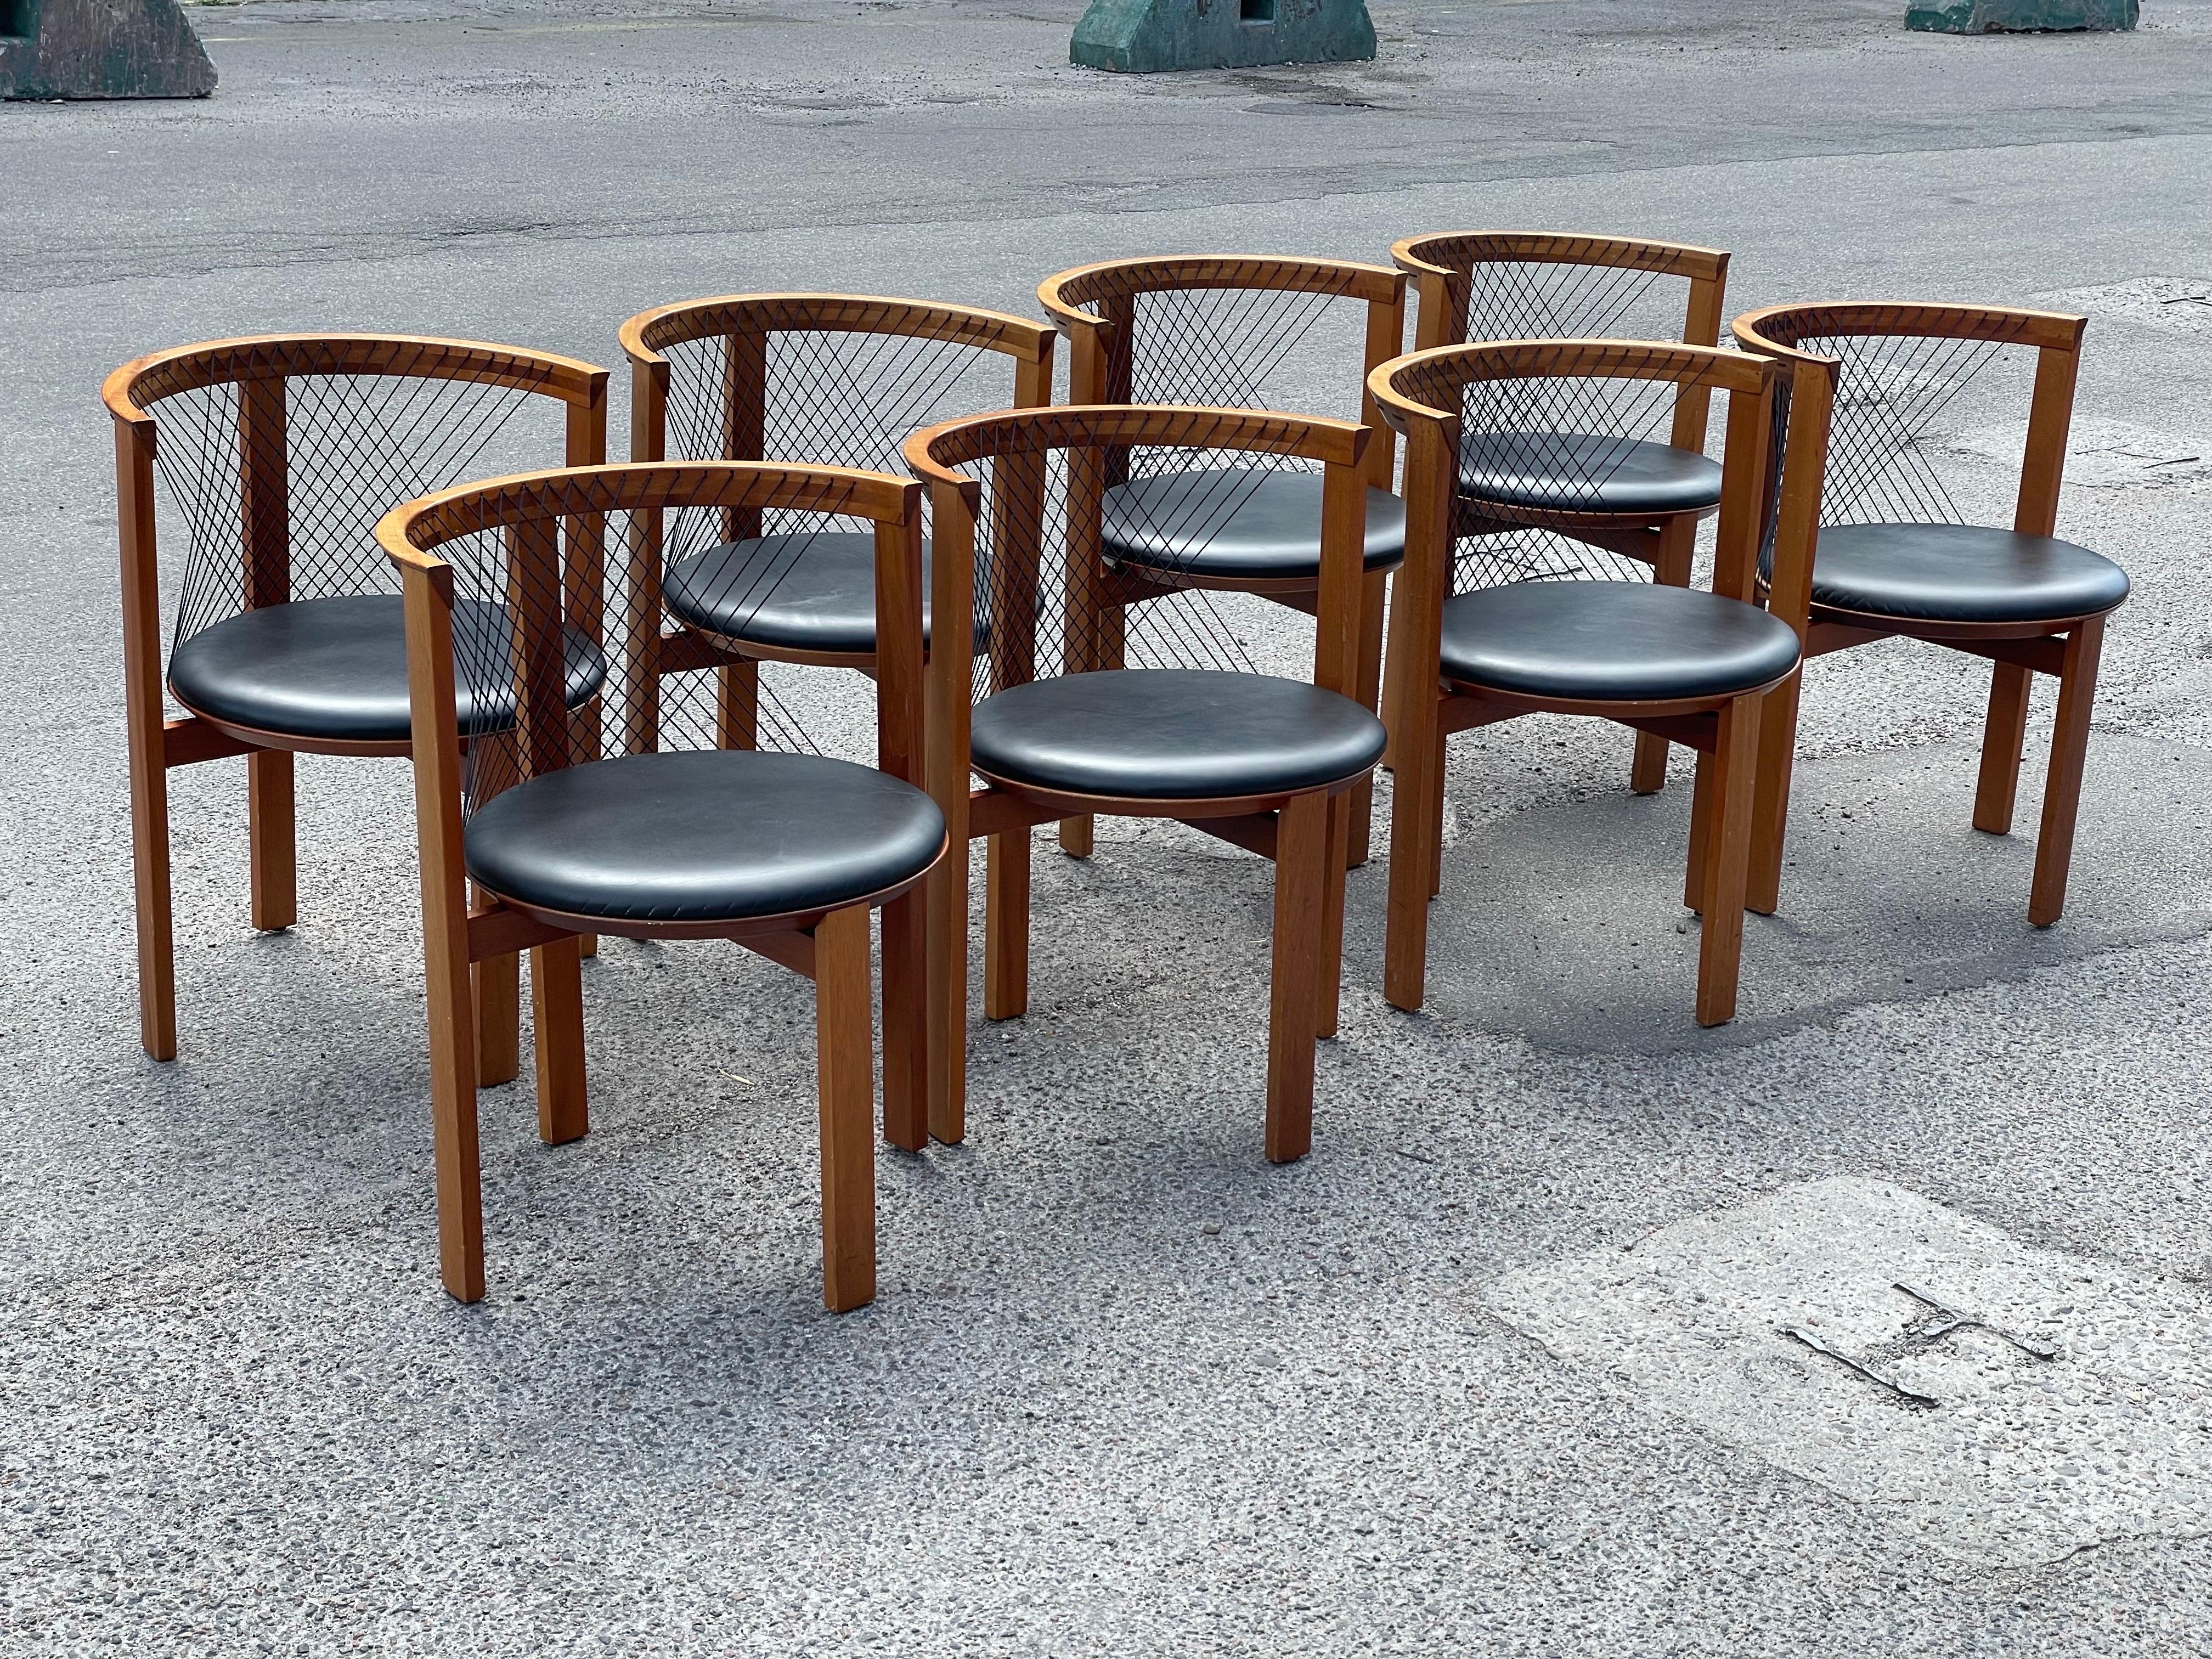 Ein seltenes Schmuckstück für anspruchsvolle Sammler und Designliebhaber: ein Satz von acht exquisiten Esszimmerstühlen, die Niels Jørgen Haugesen in den 1970er Jahren für Tranekaer Denmark entworfen hat. Diese Stühle sind ein Zeugnis für die